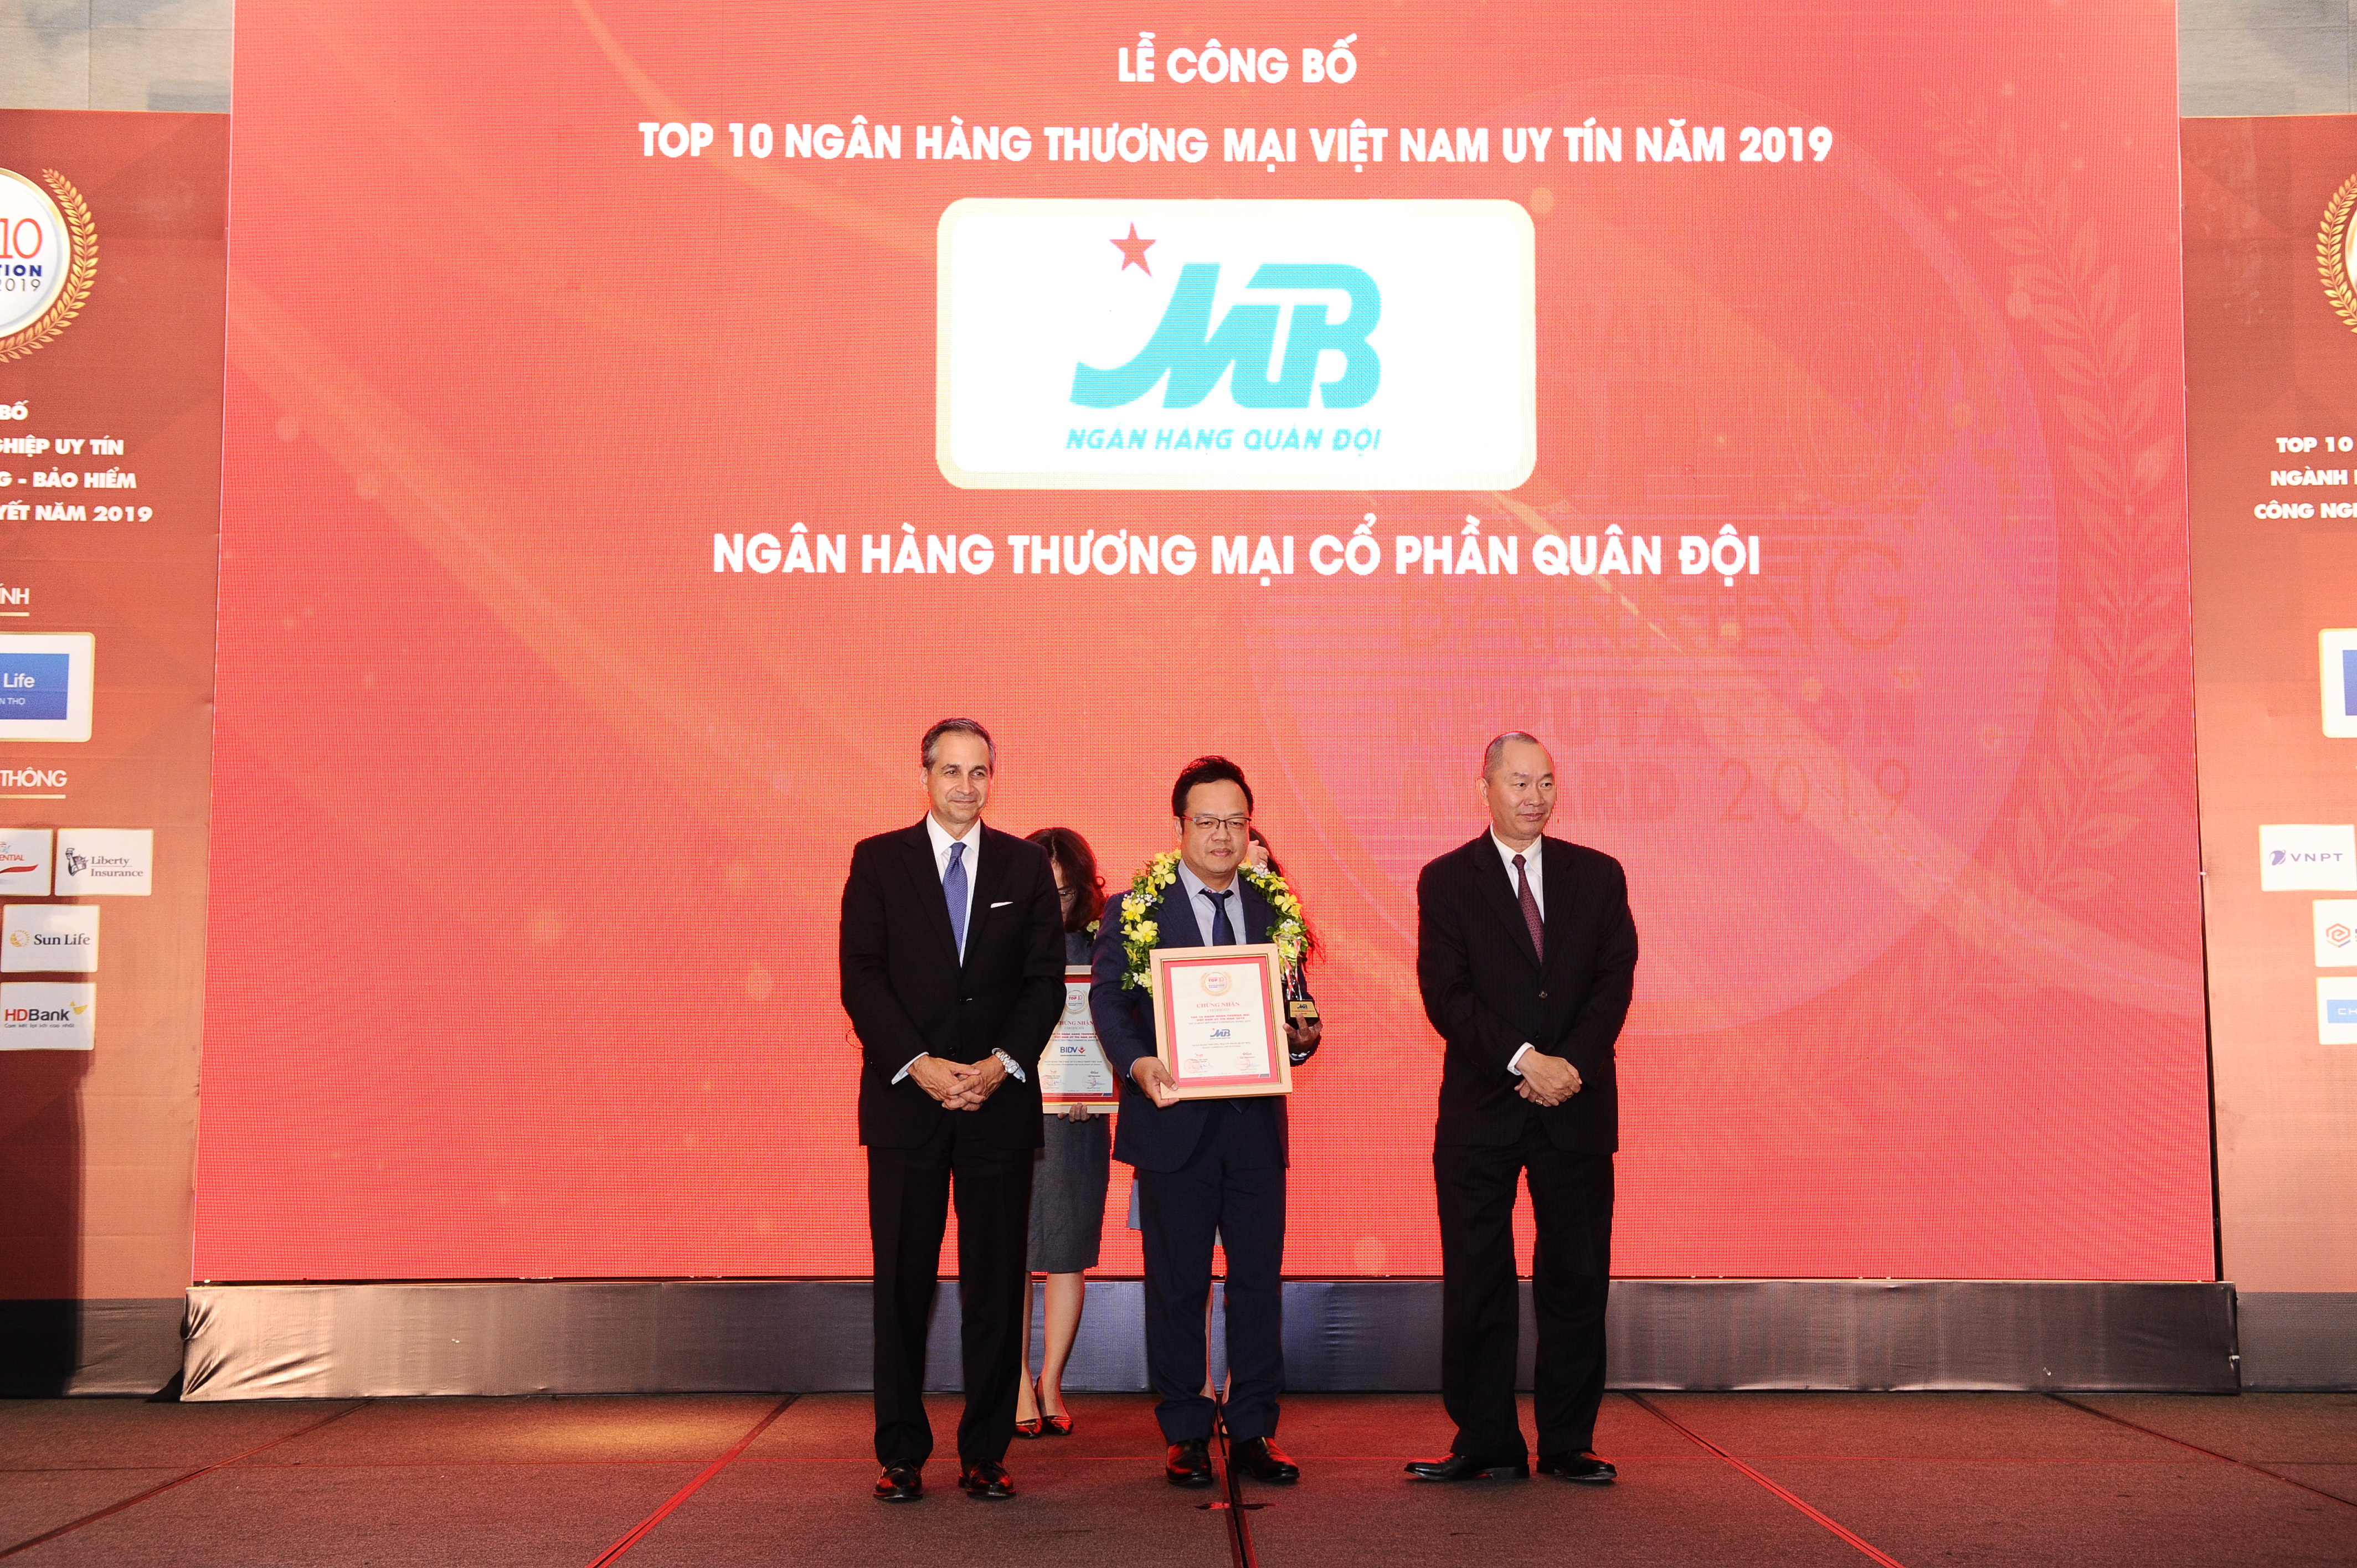 MB - Top 5 Ngân hàng thương mại Việt Nam uy tín năm 2019